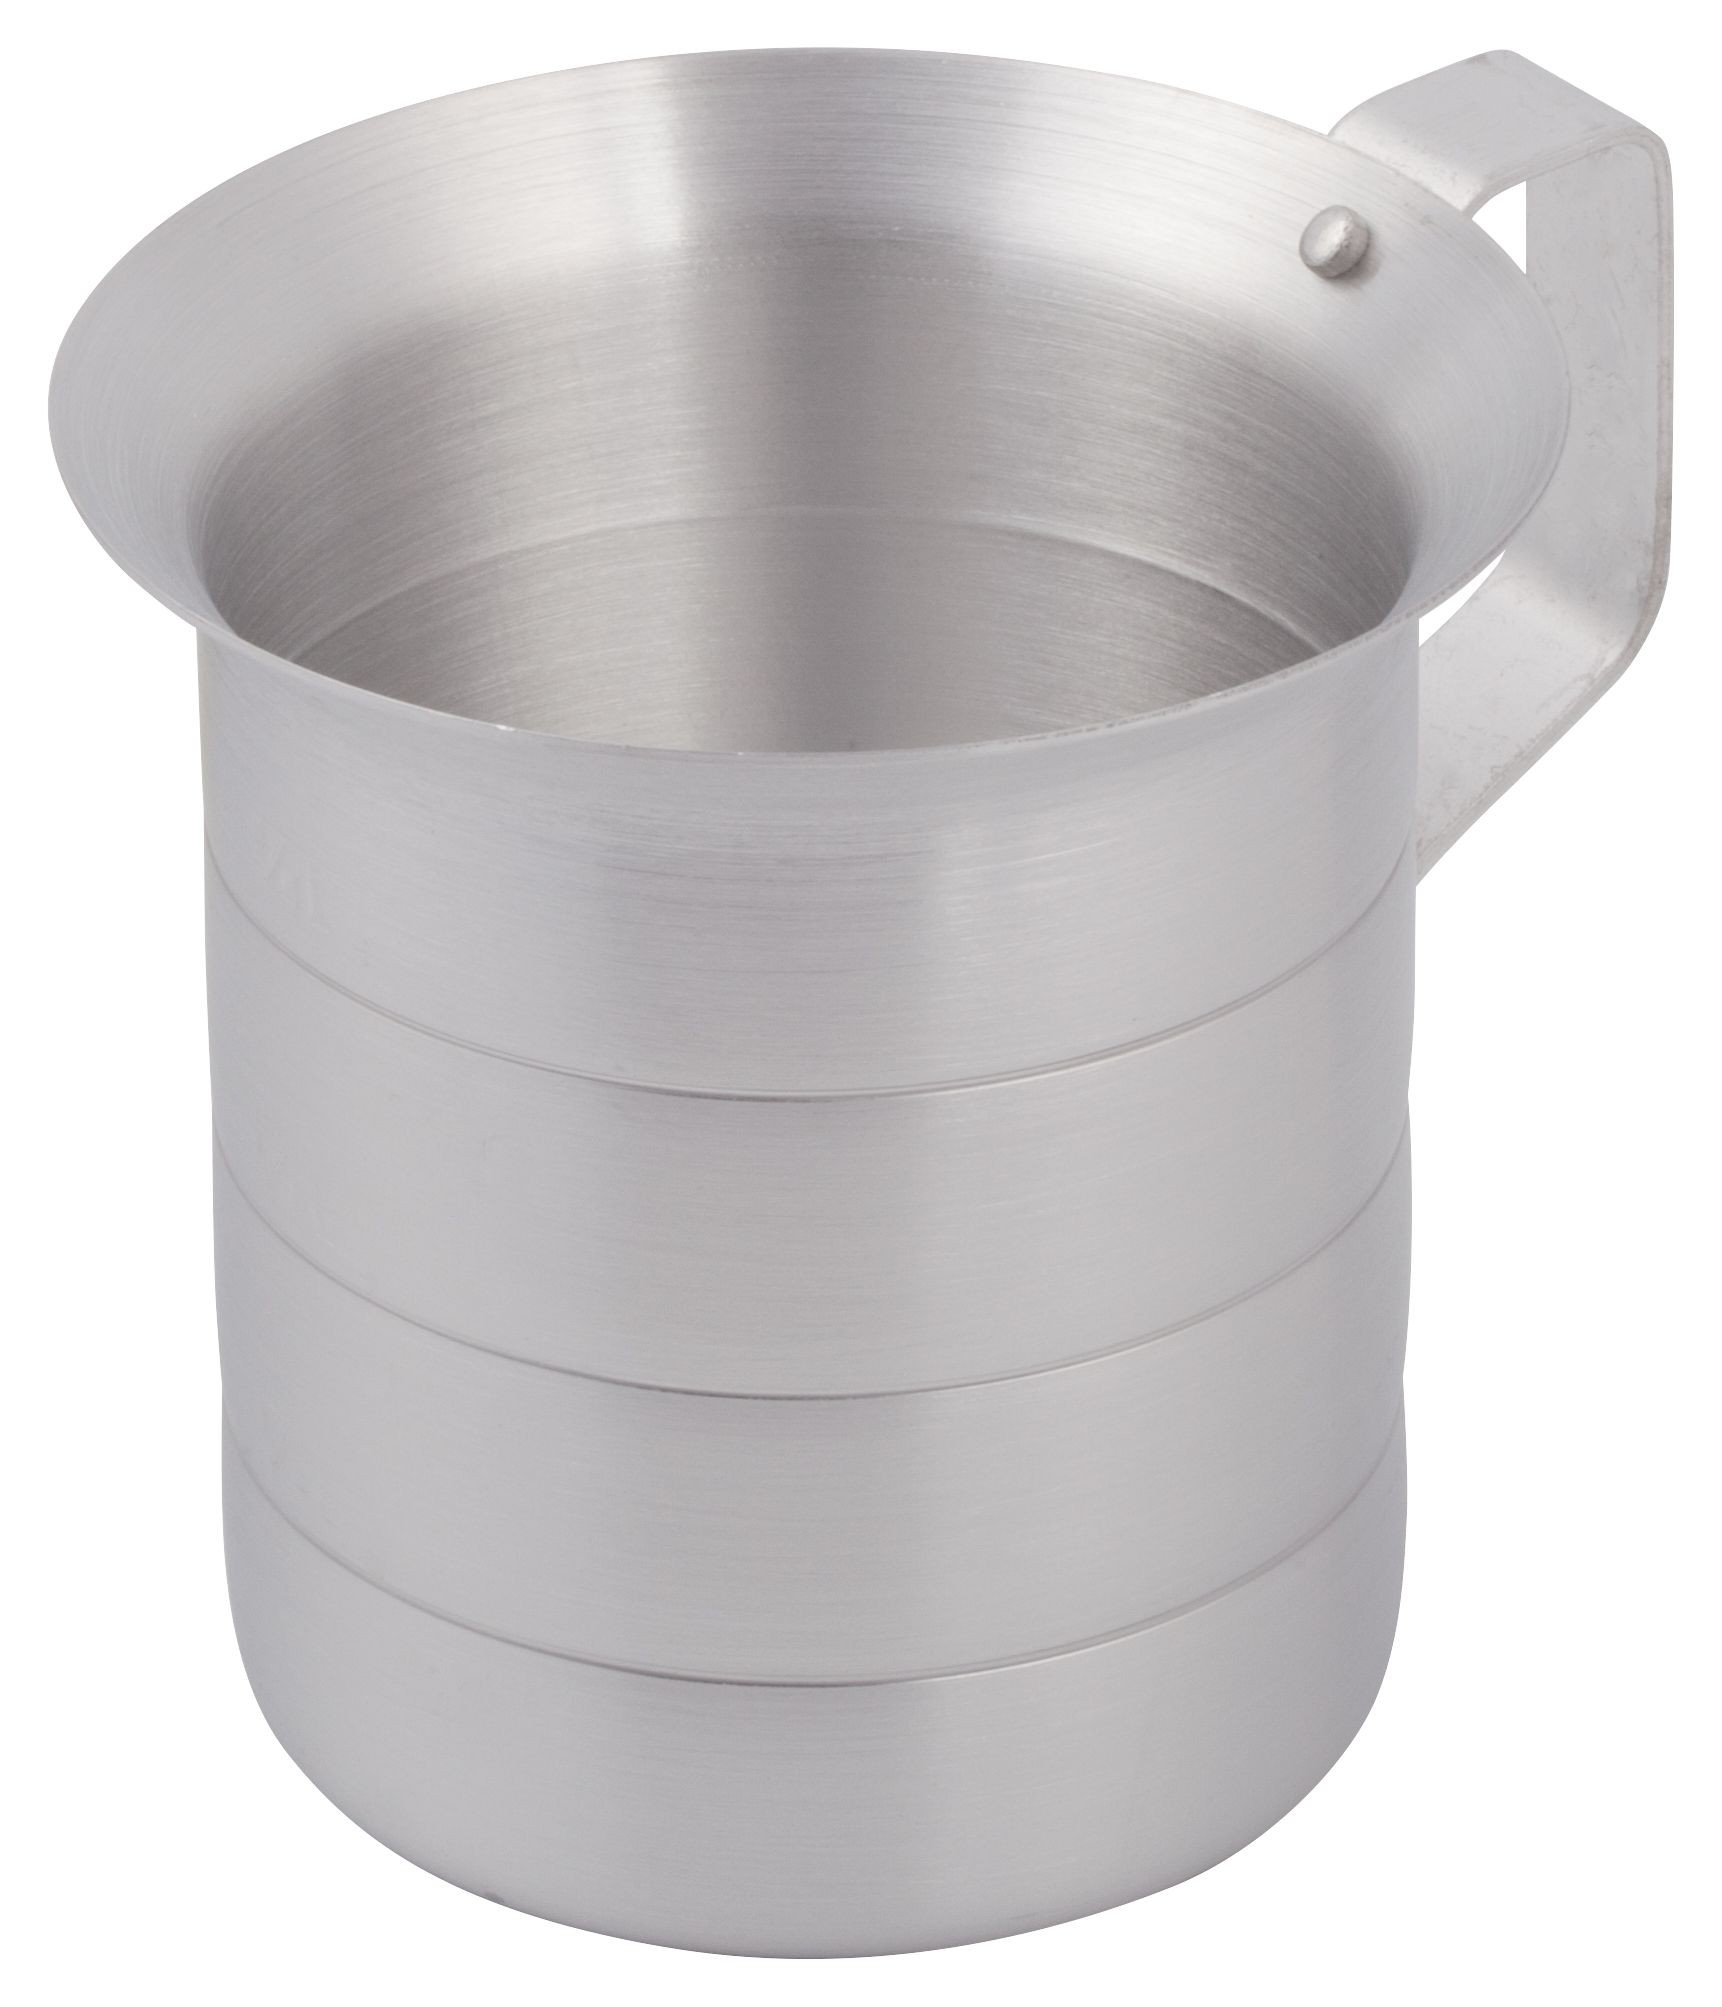 https://www.lionsdeal.com/itempics/Aluminum-Measuring-Cup---1-Qua-26924_xlarge.jpg